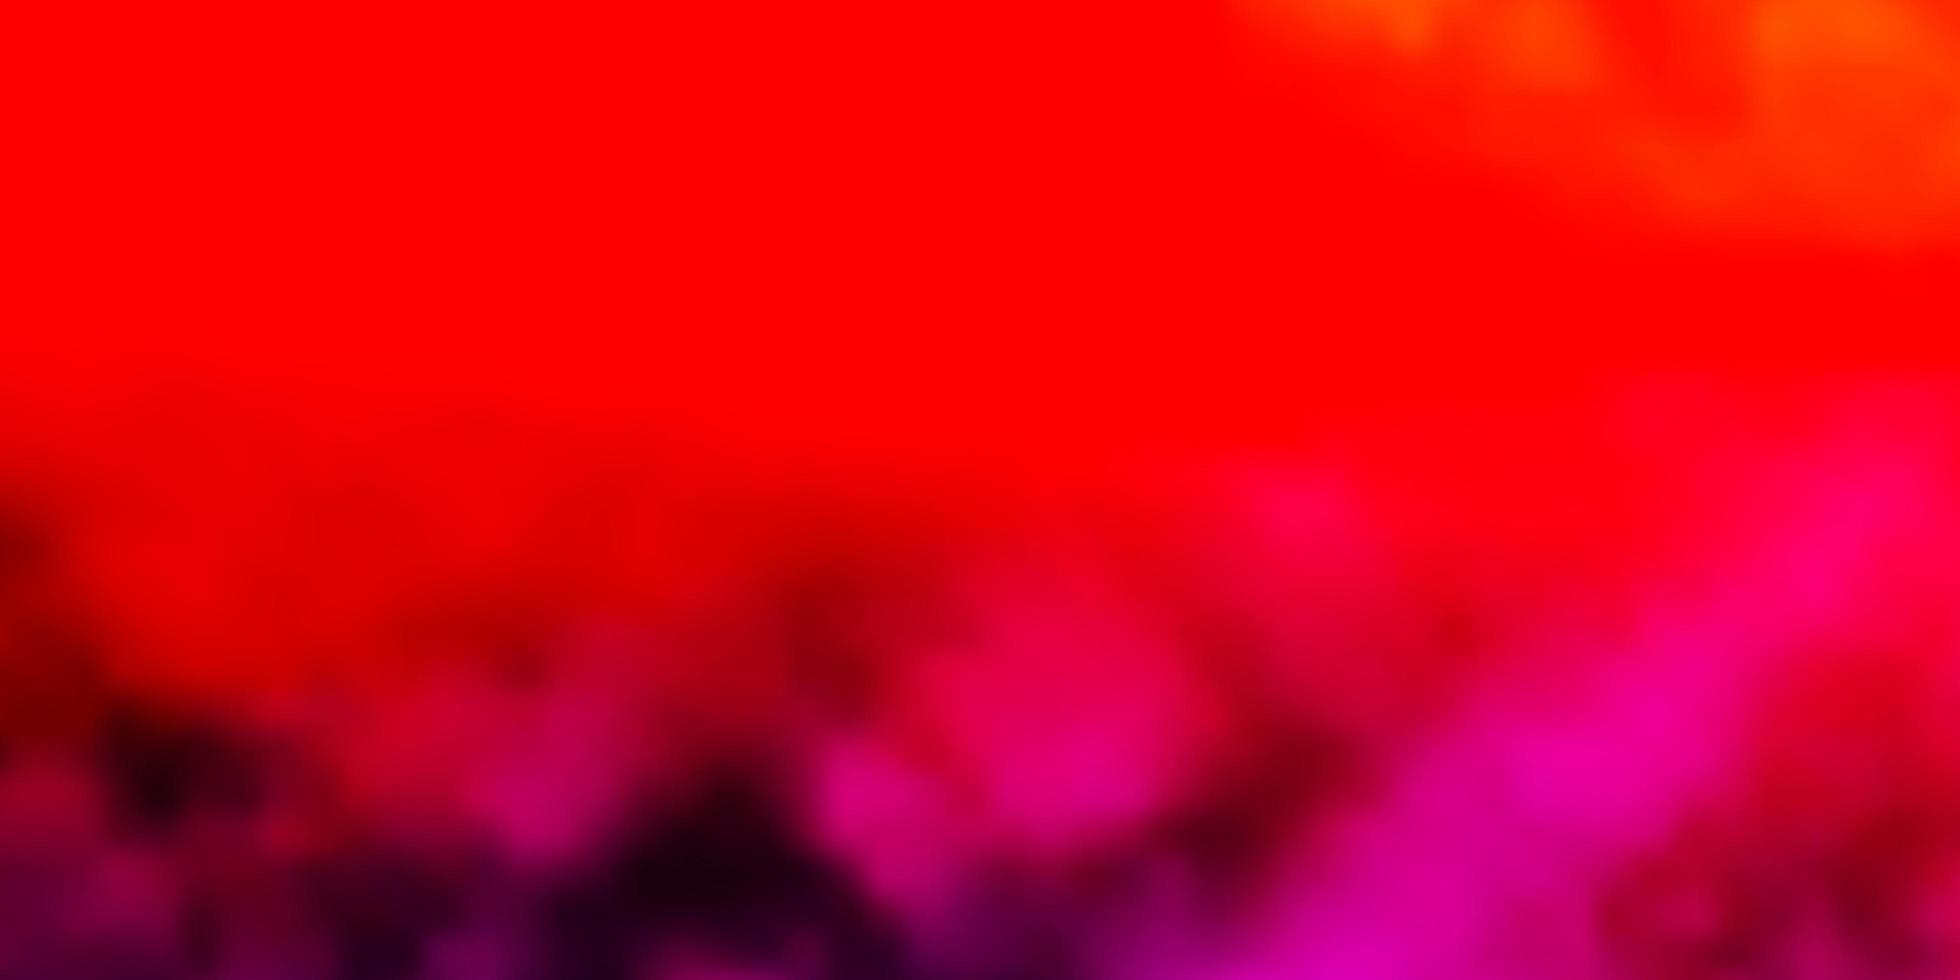 mörkrosa, röd vektorlayout med molnlandskap. vektor